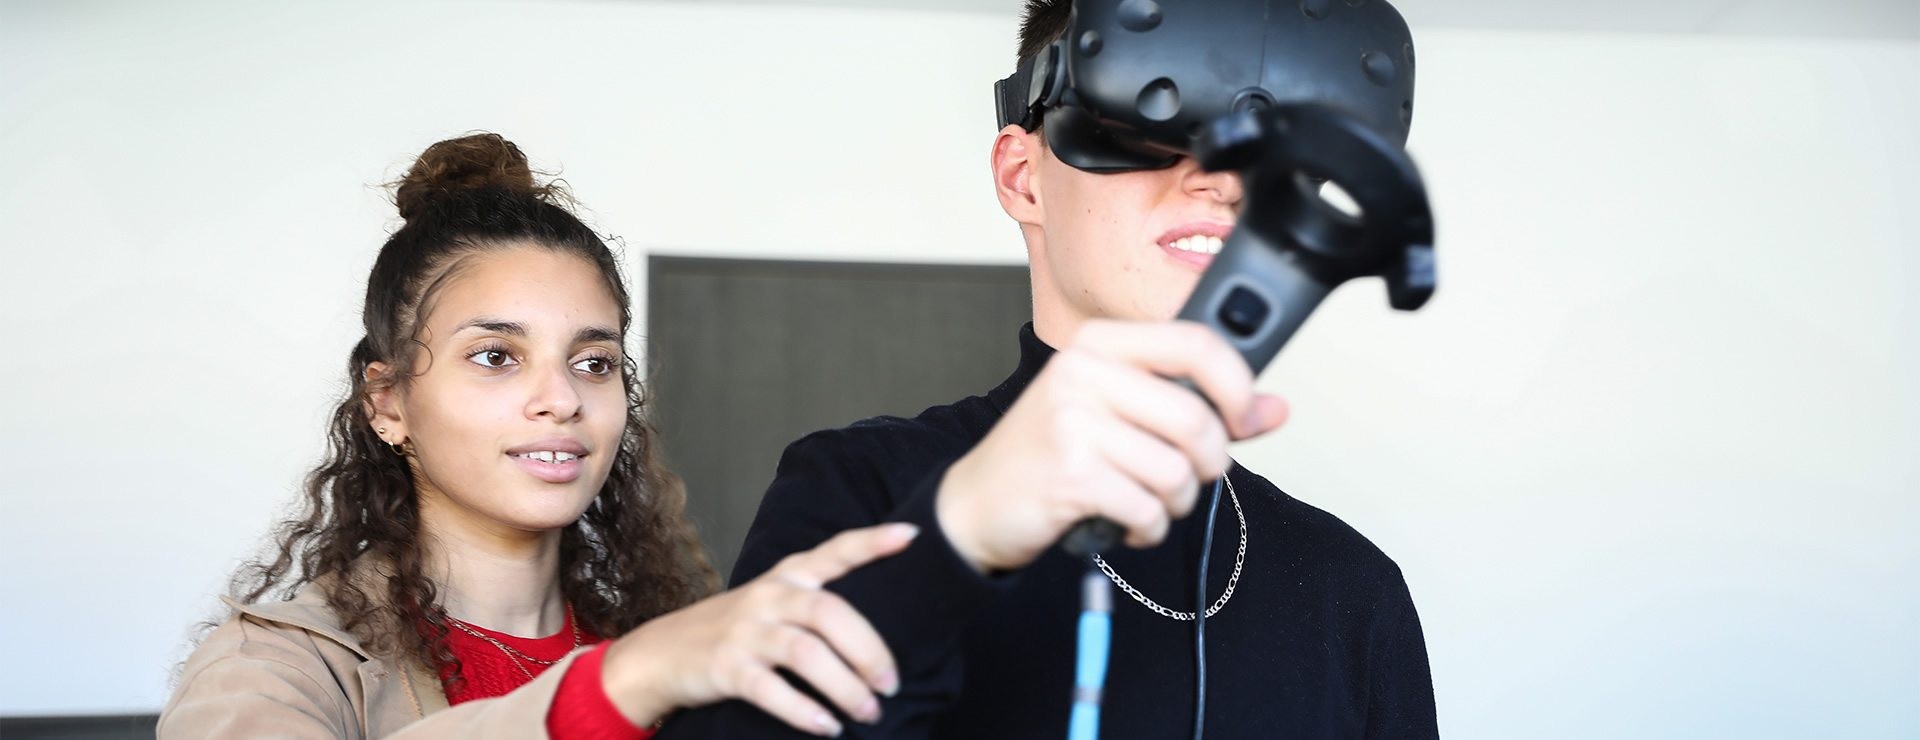 Ecole développement web 3W Academy - casque de realité virtuel